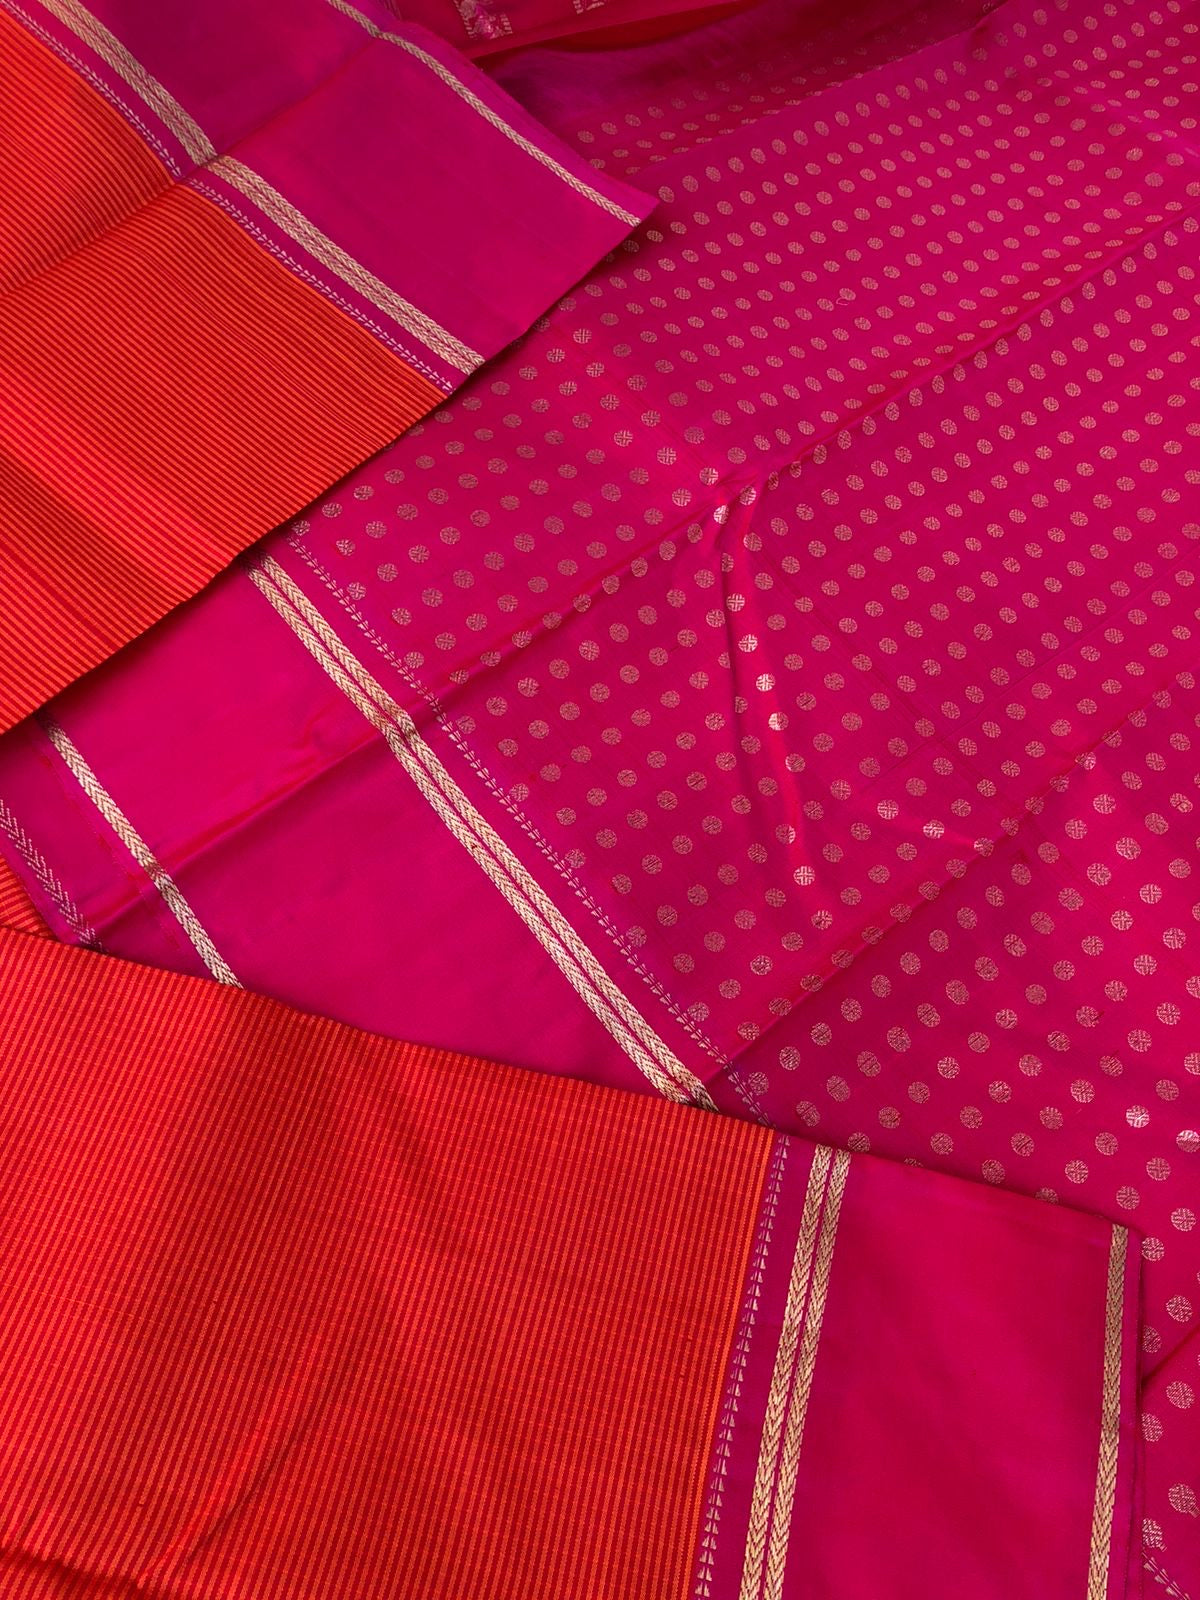 Kattams on Kanchivarams - Kasa kasa kattam - the most beautiful chettinad style orange and pink kasa kasa kattam the best part is 1000 buttas woven blouse